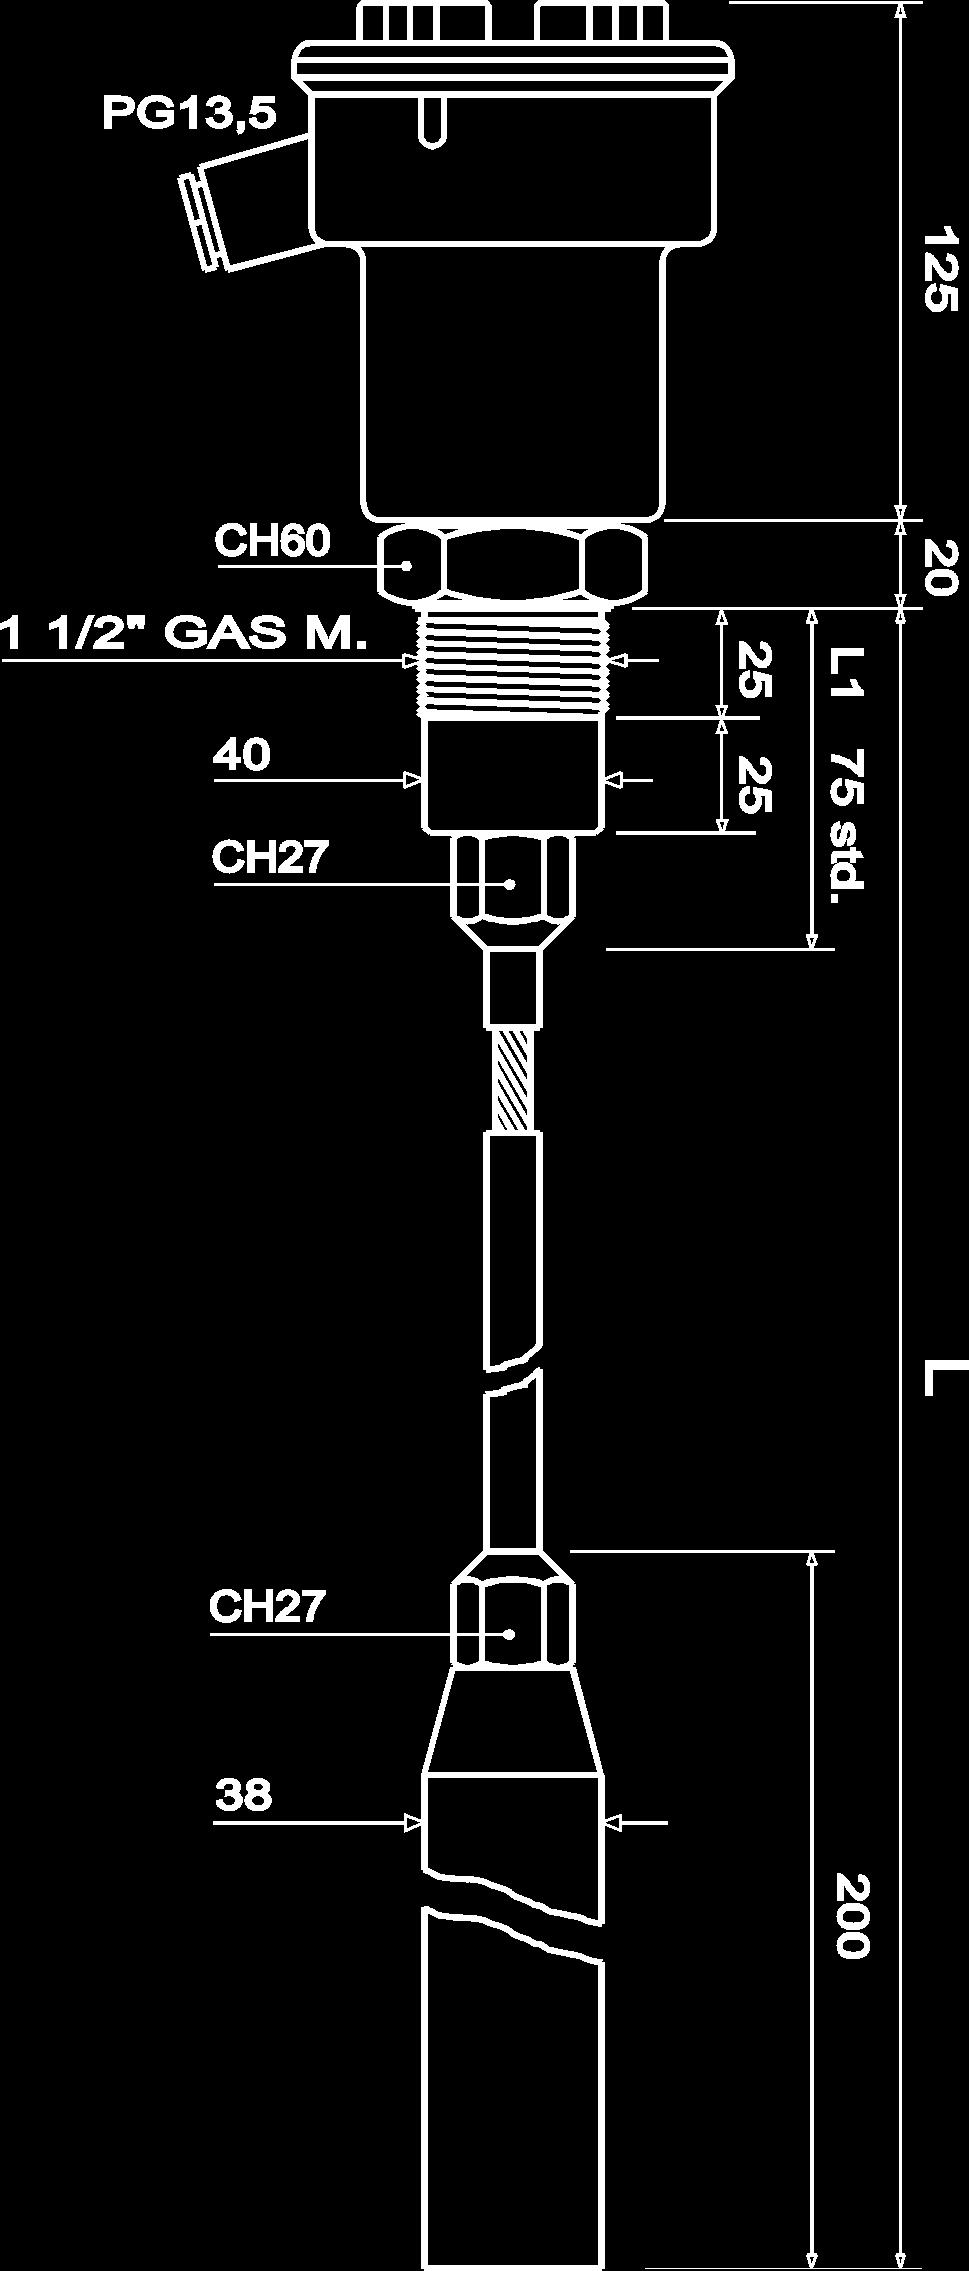 CLS7 Controllo di livello a contatto per montaggio dall alto Fune in acciaio al carbonio / PE Adatto al controllo di granulati e polveri Protezione IP66 67 Lunghezza max 30 m Certificato ATEX CLS7 è